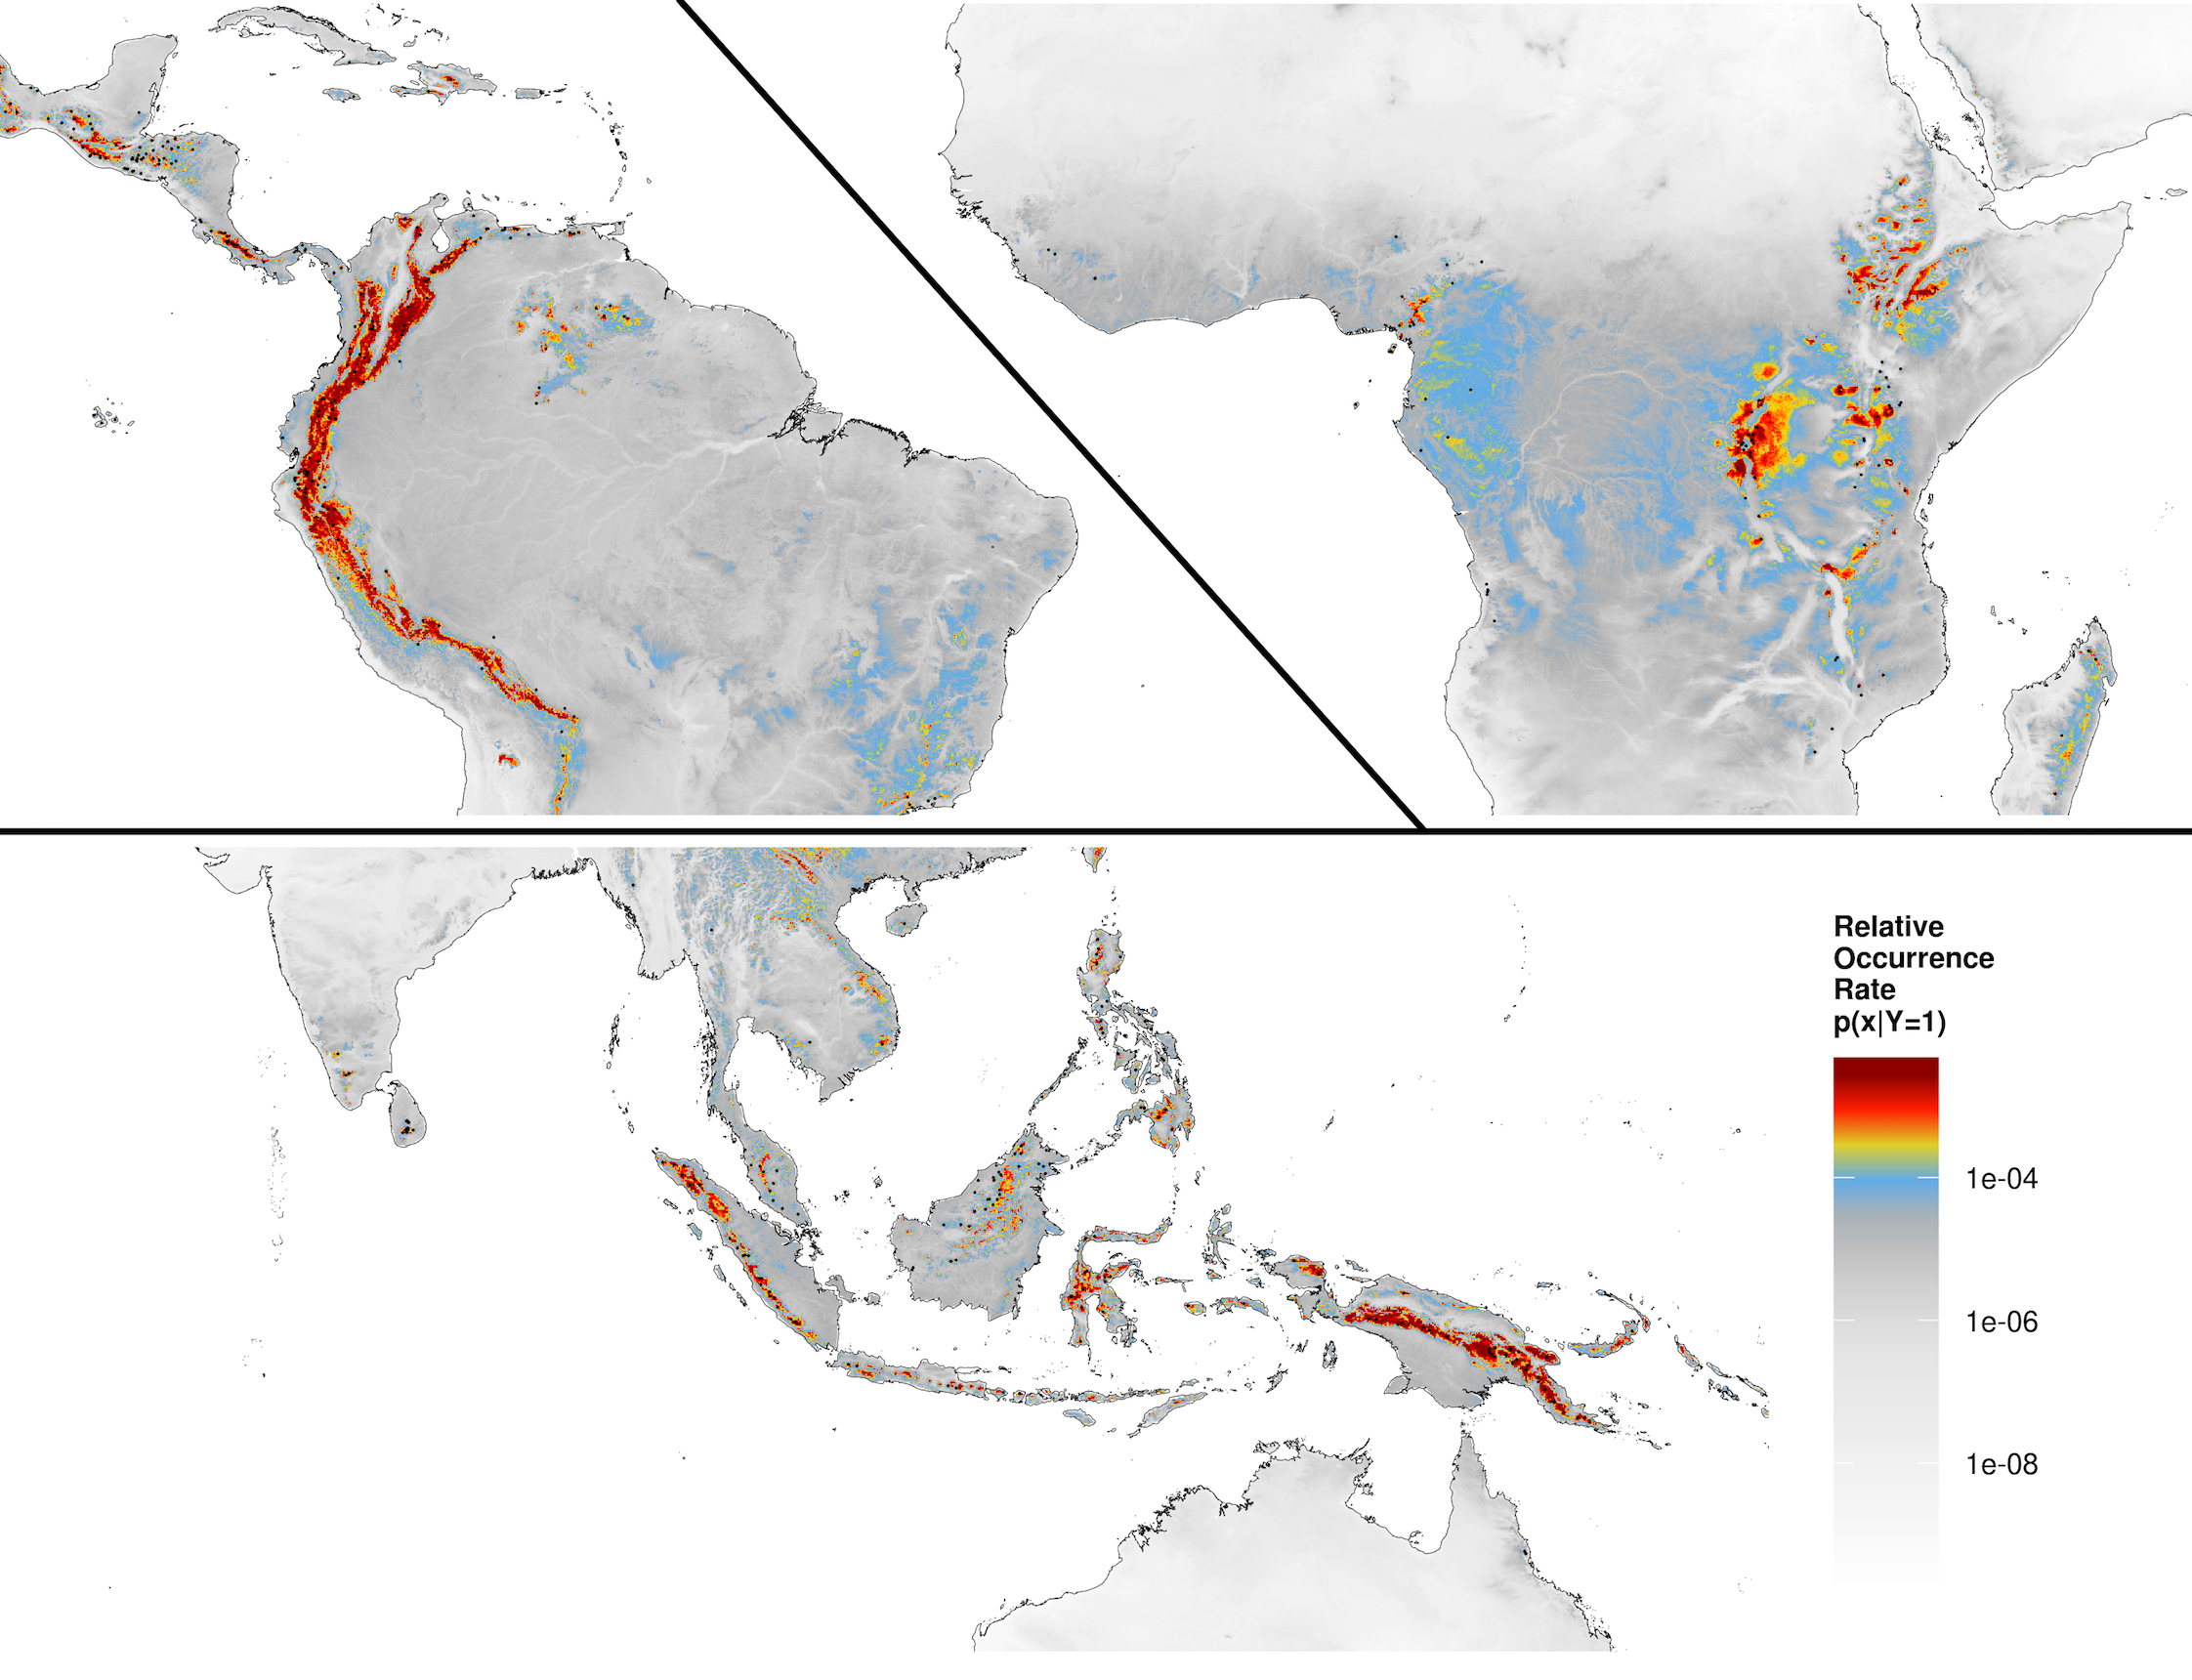 Os mapas mostram a distribuição de florestas tropicais de monhanha, usando dados de cobertura de satélites. Os satélites que observam a Terra fornecem muitos tipos de dados sobre os ecossistemas do planeta, e o Mapa da Vida começará a incorporar esses dados para melhorar o conhecimento geográfico de onde as espécies vivem. Crédito: Adam Wilson e Walter Jetz, PLOS Biology, 2016